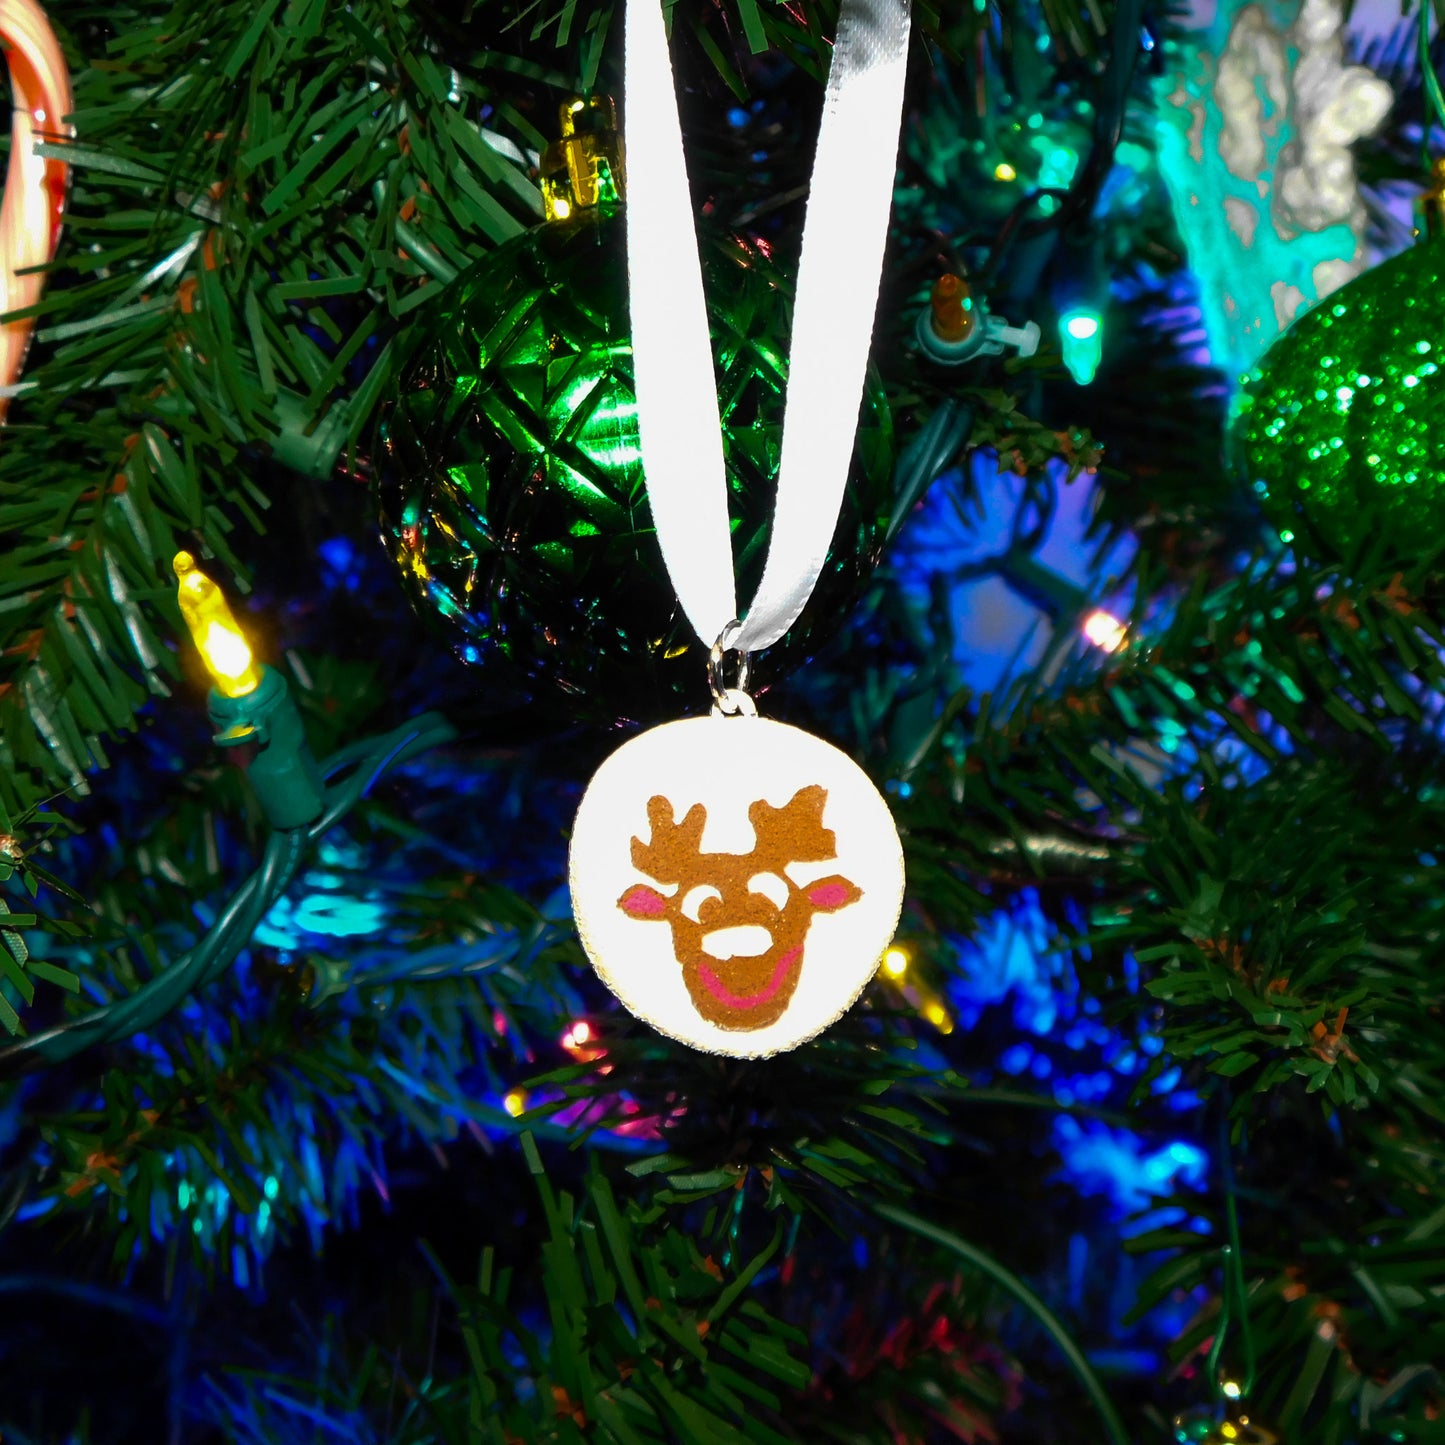 Reindeer Pillsbury Inspired Sugar Cookie Ornament